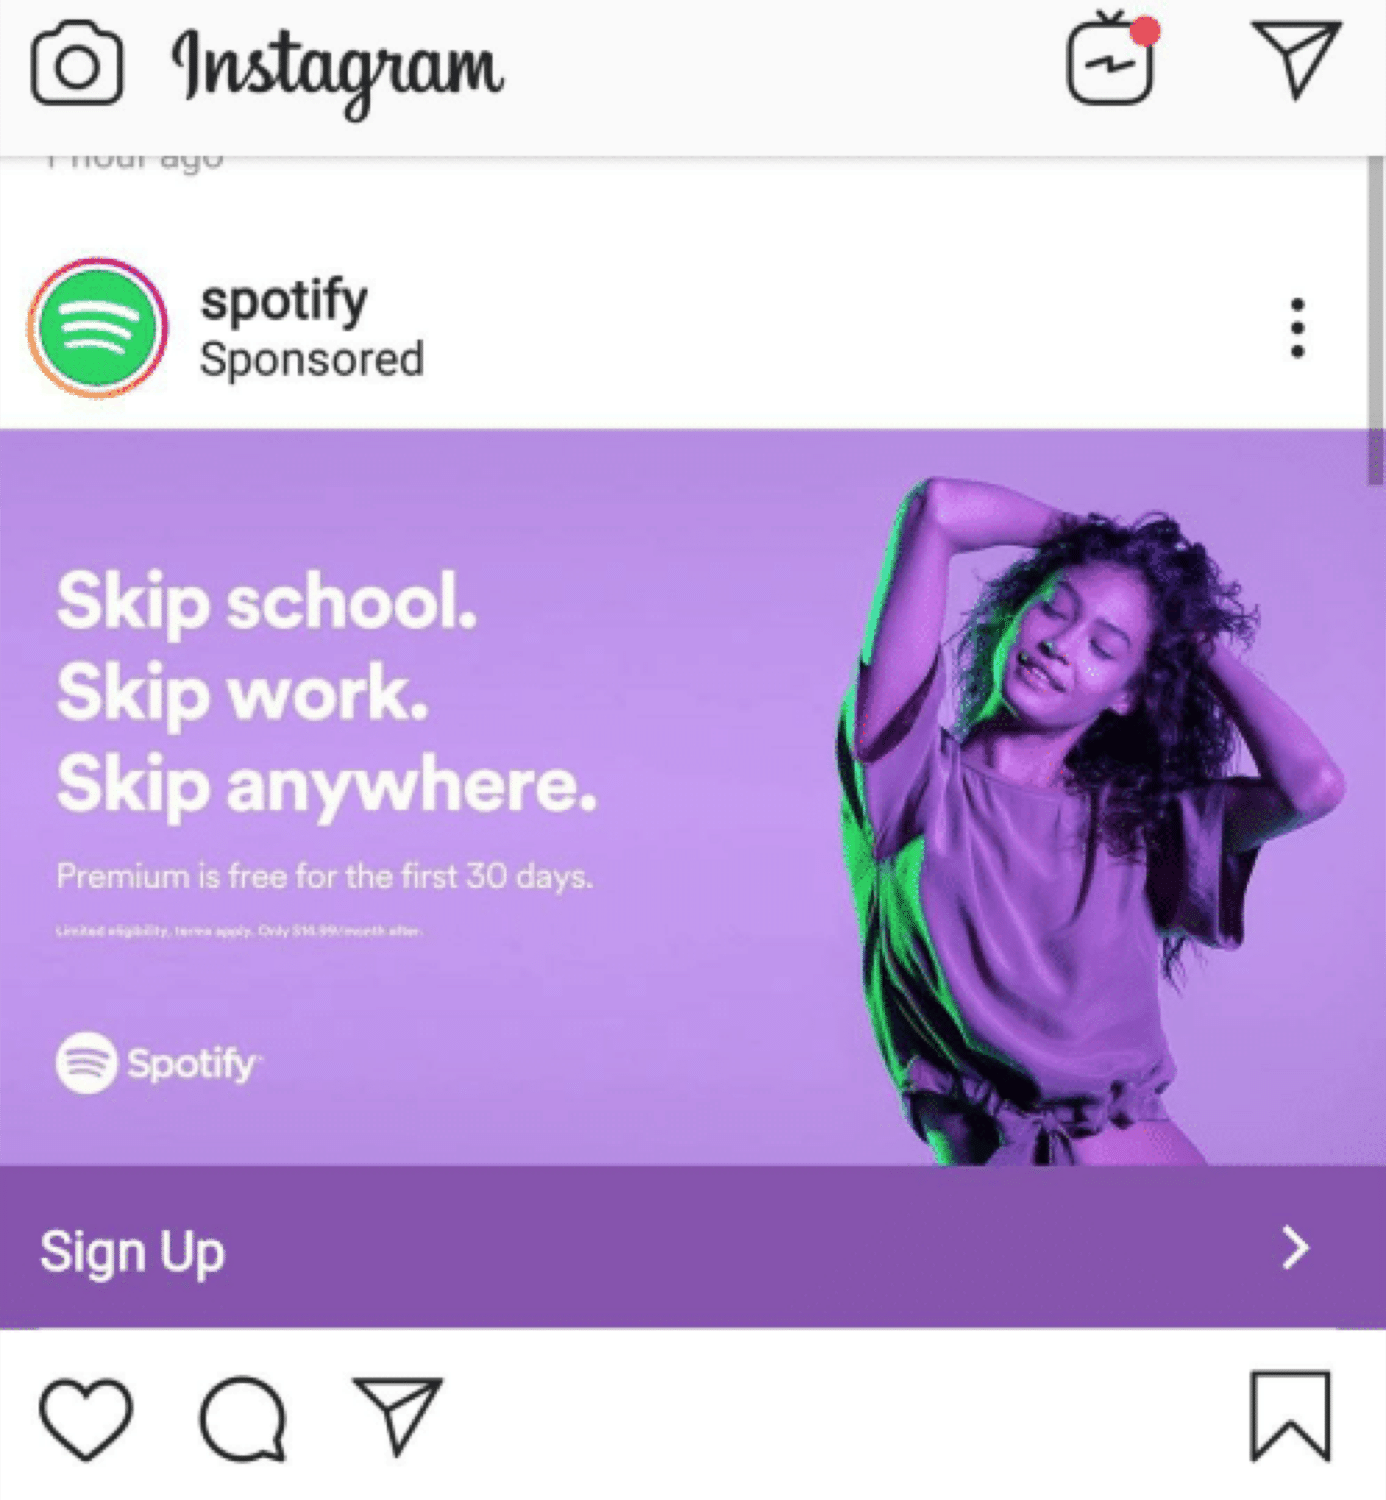 Et eksempel på en Instagram-annonce